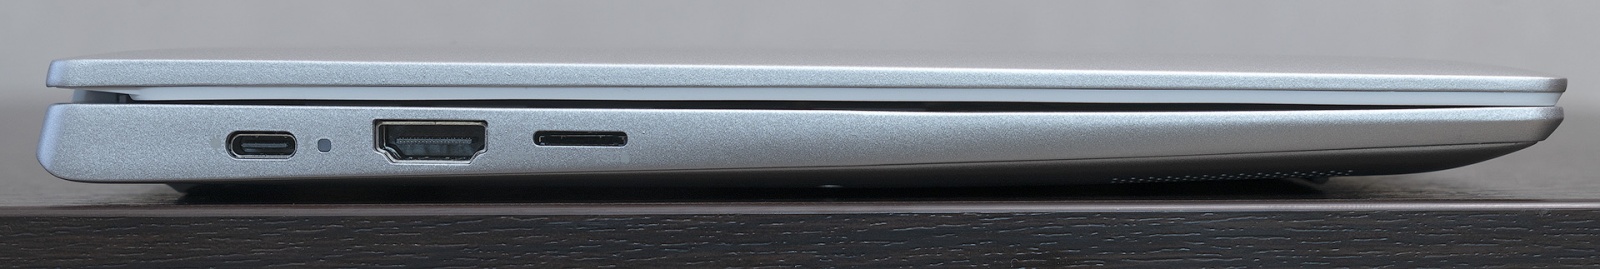 Dell Inspiron 7490: лёгкий металлический ноутбук на каждый день с отличной автономностью - 7